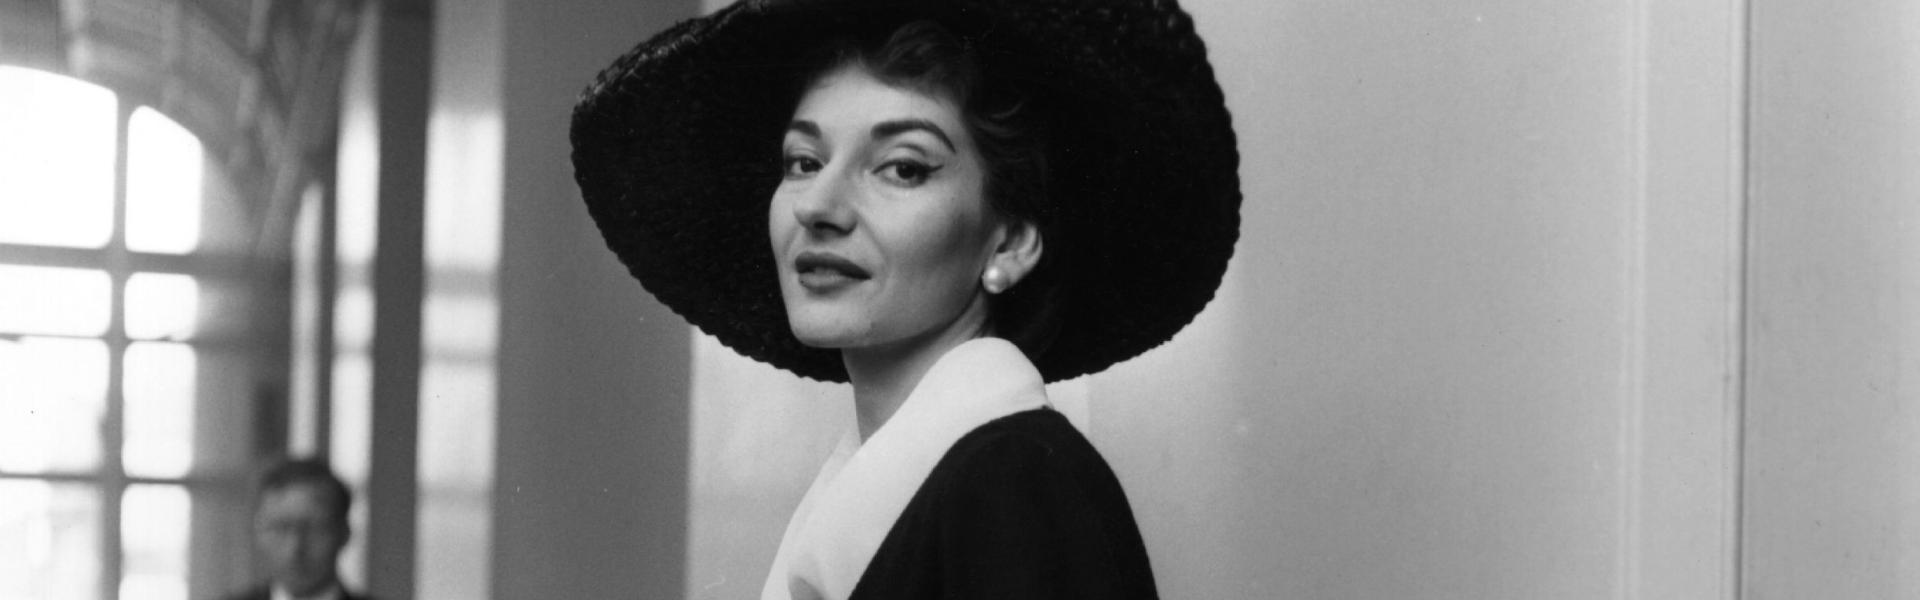 La Divina From Warner Classics Is a Bounty of Maria Callas